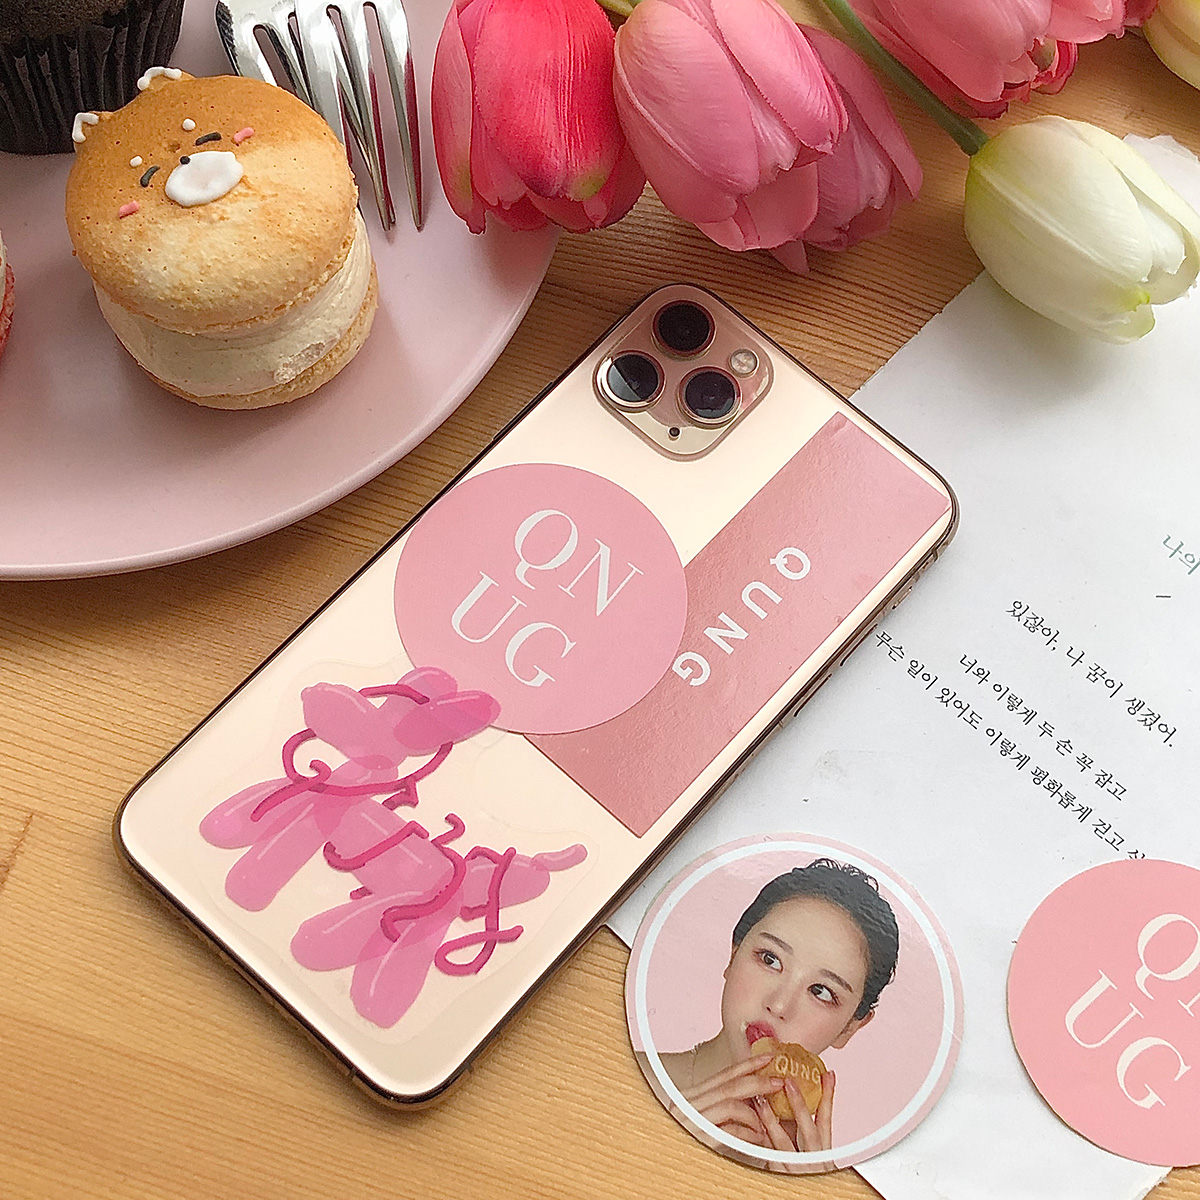 クン QUNG 2020 pink sticker set 